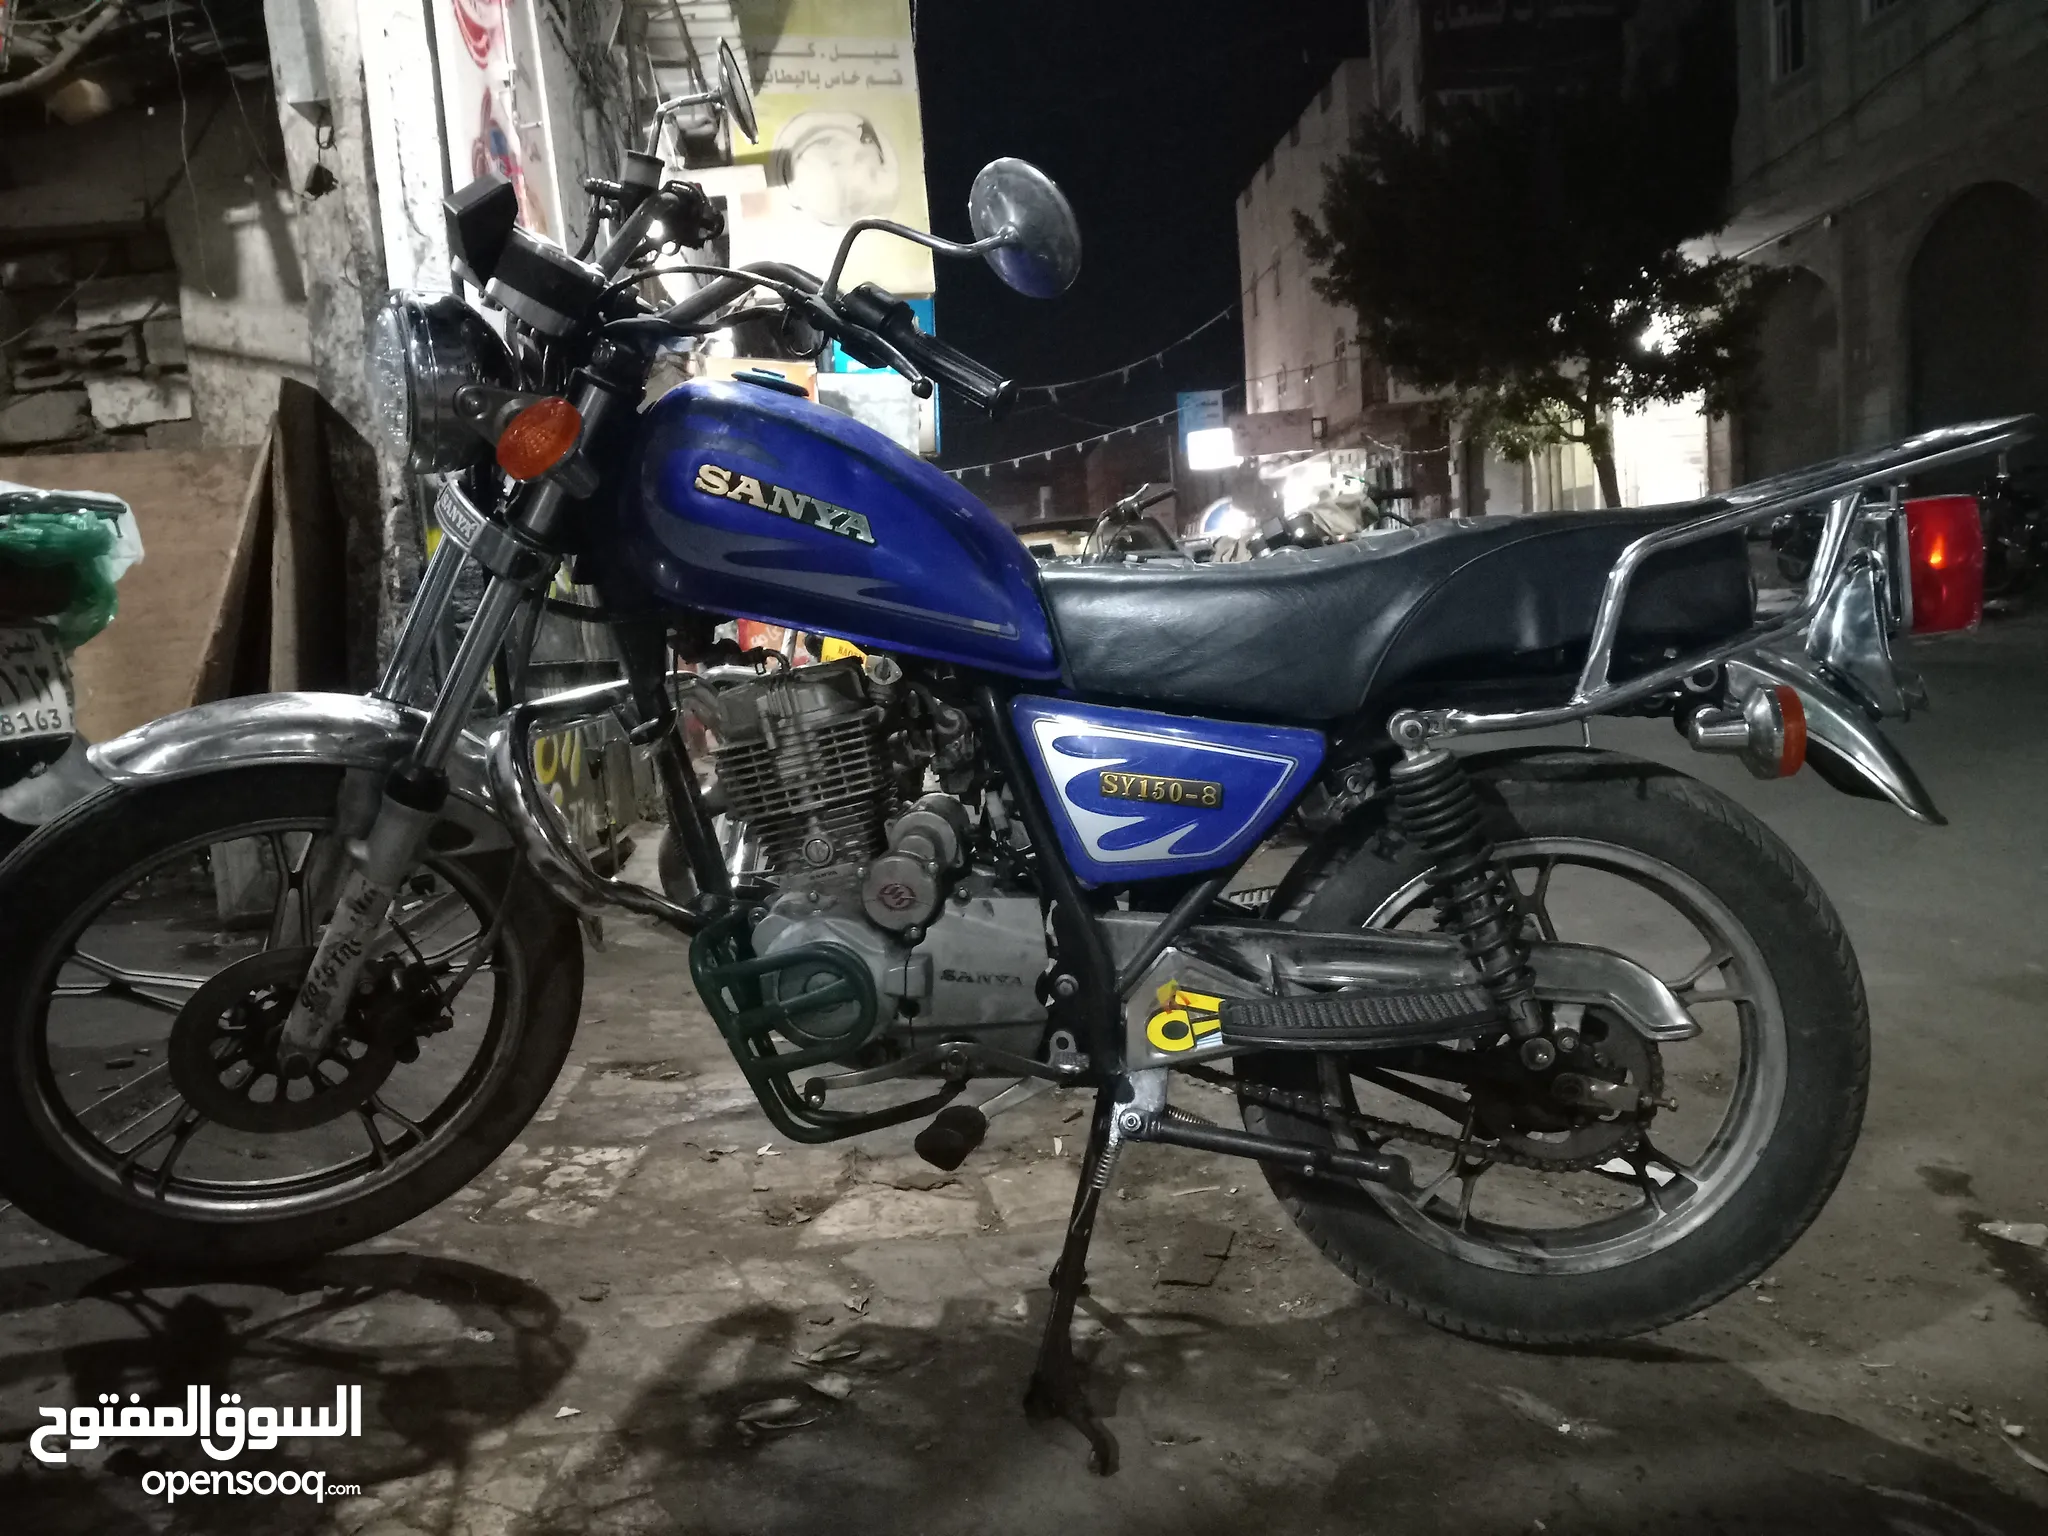 دراجات نارية للبيع في اليمن : بطح وكروز : سوزوكي كوزاكي هوندا : افضل سعر |  السوق المفتوح